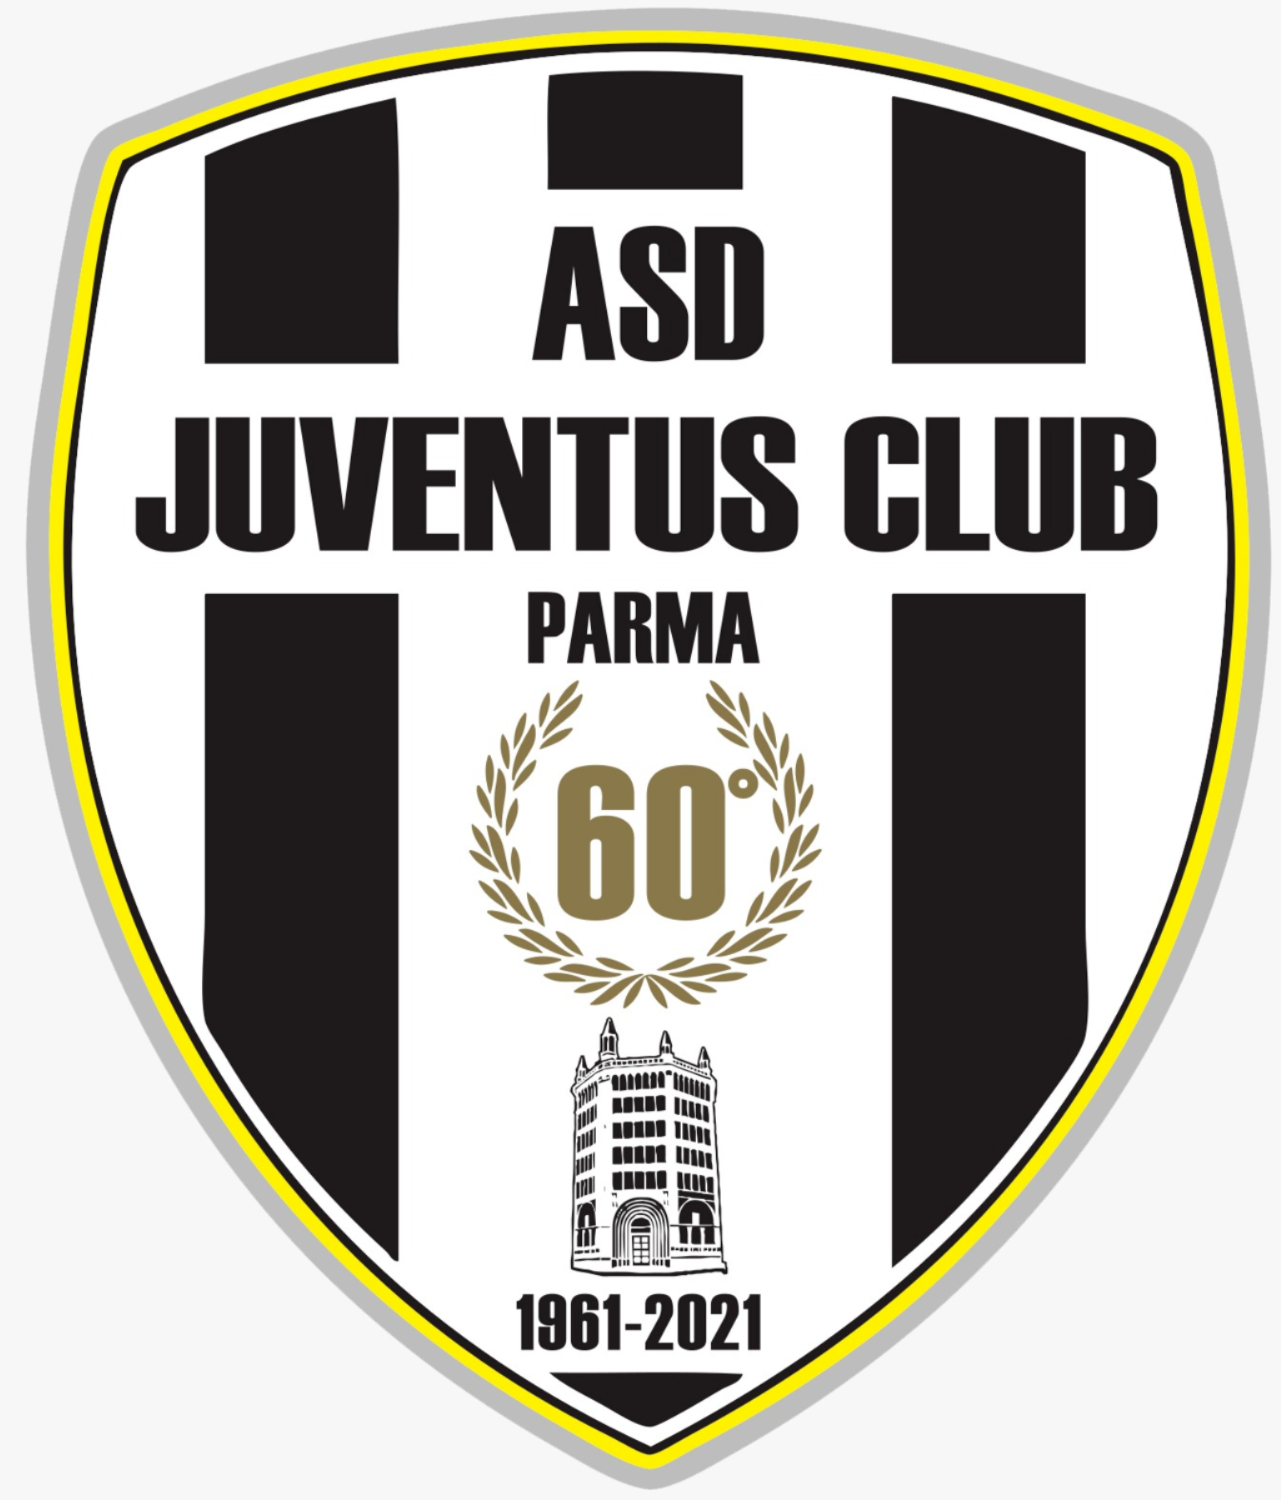 Juventus Club